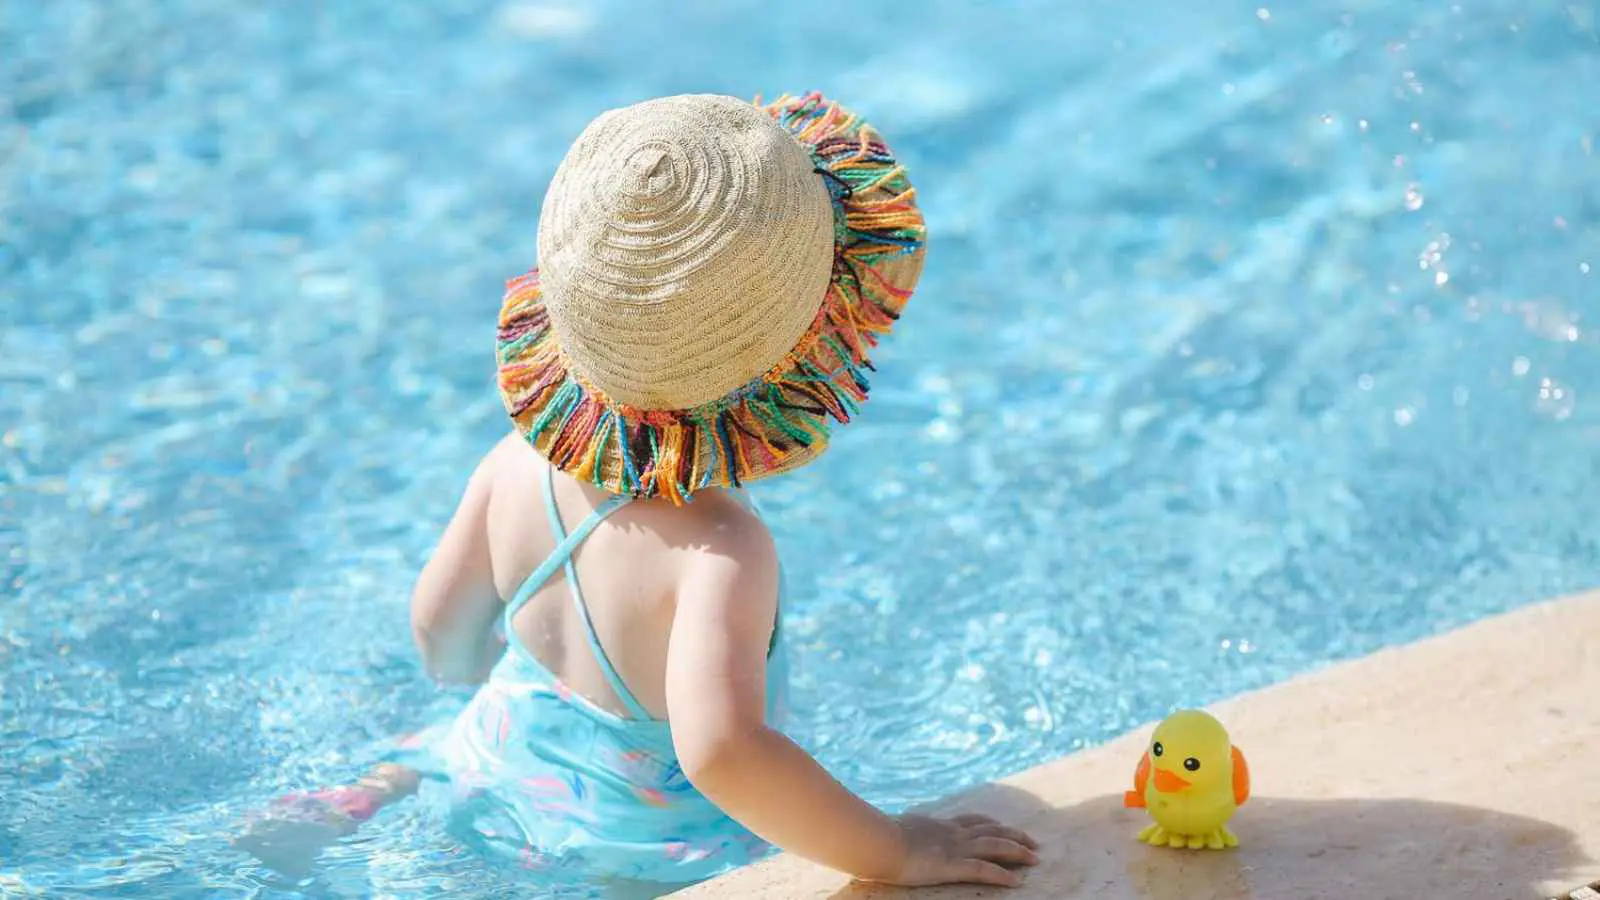 ملابس سباحة طفلك قد تعرّضه لخطر الغرق (فيديو)